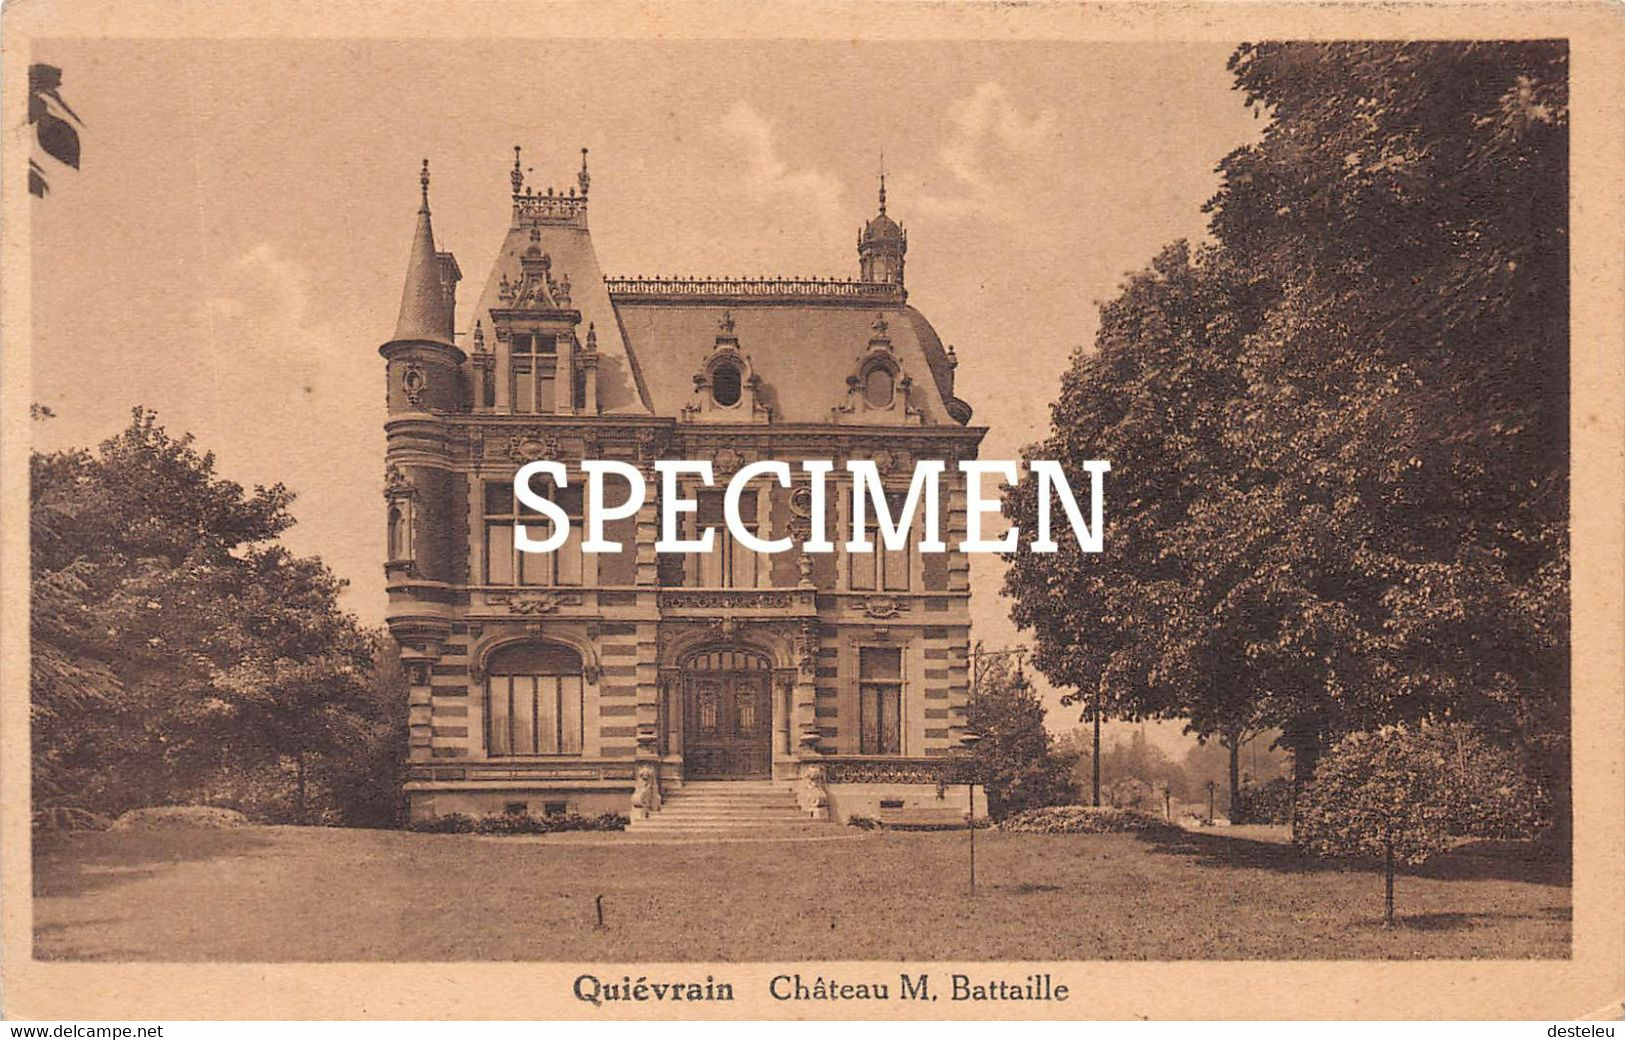 Château M. Bataille - Quiévrain - Quiévrain